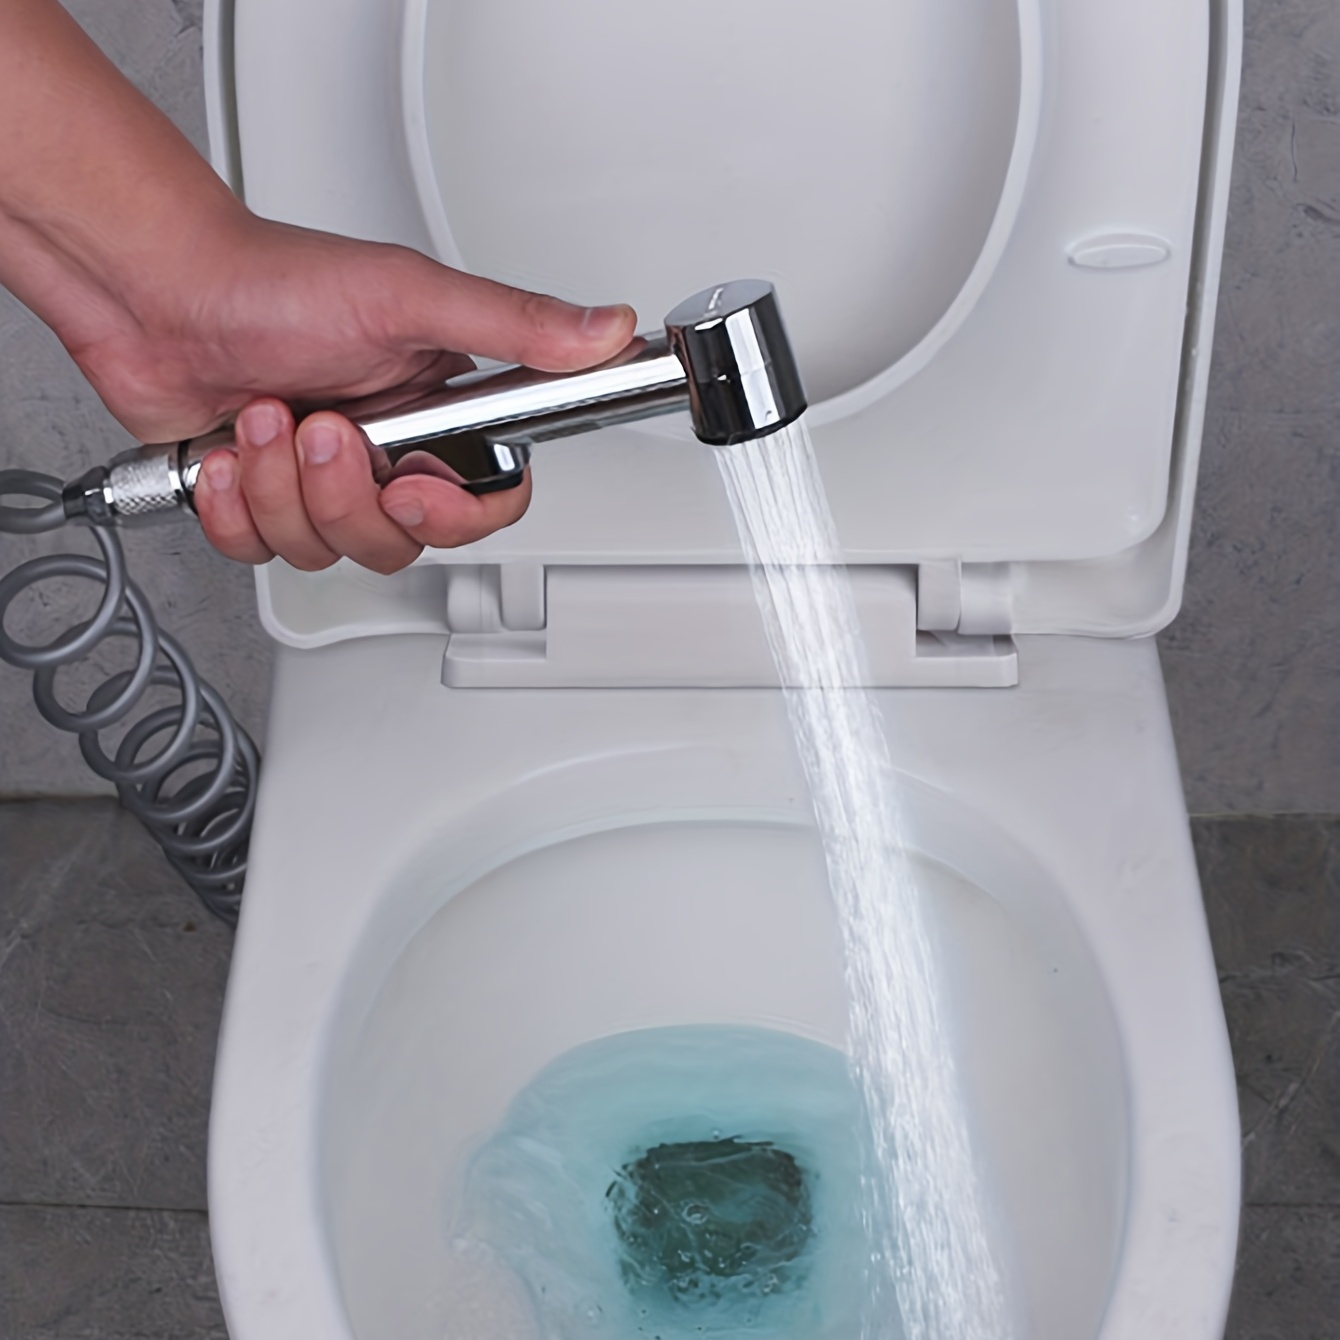 Handheld Bidet Toilet Sprayer for Bathing Showering and Feminine